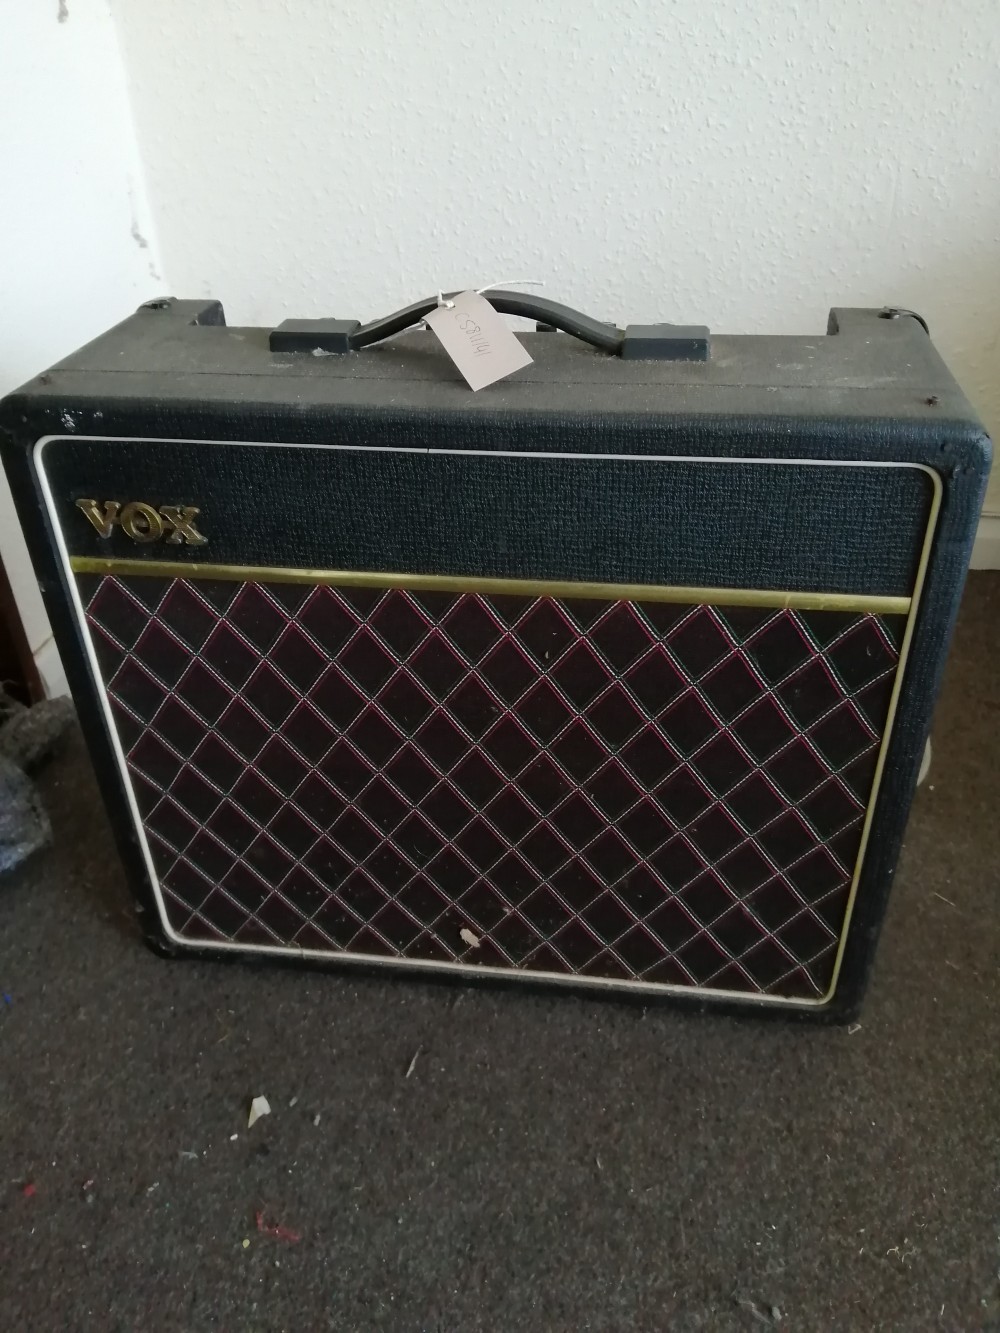 A Vox guitar amp